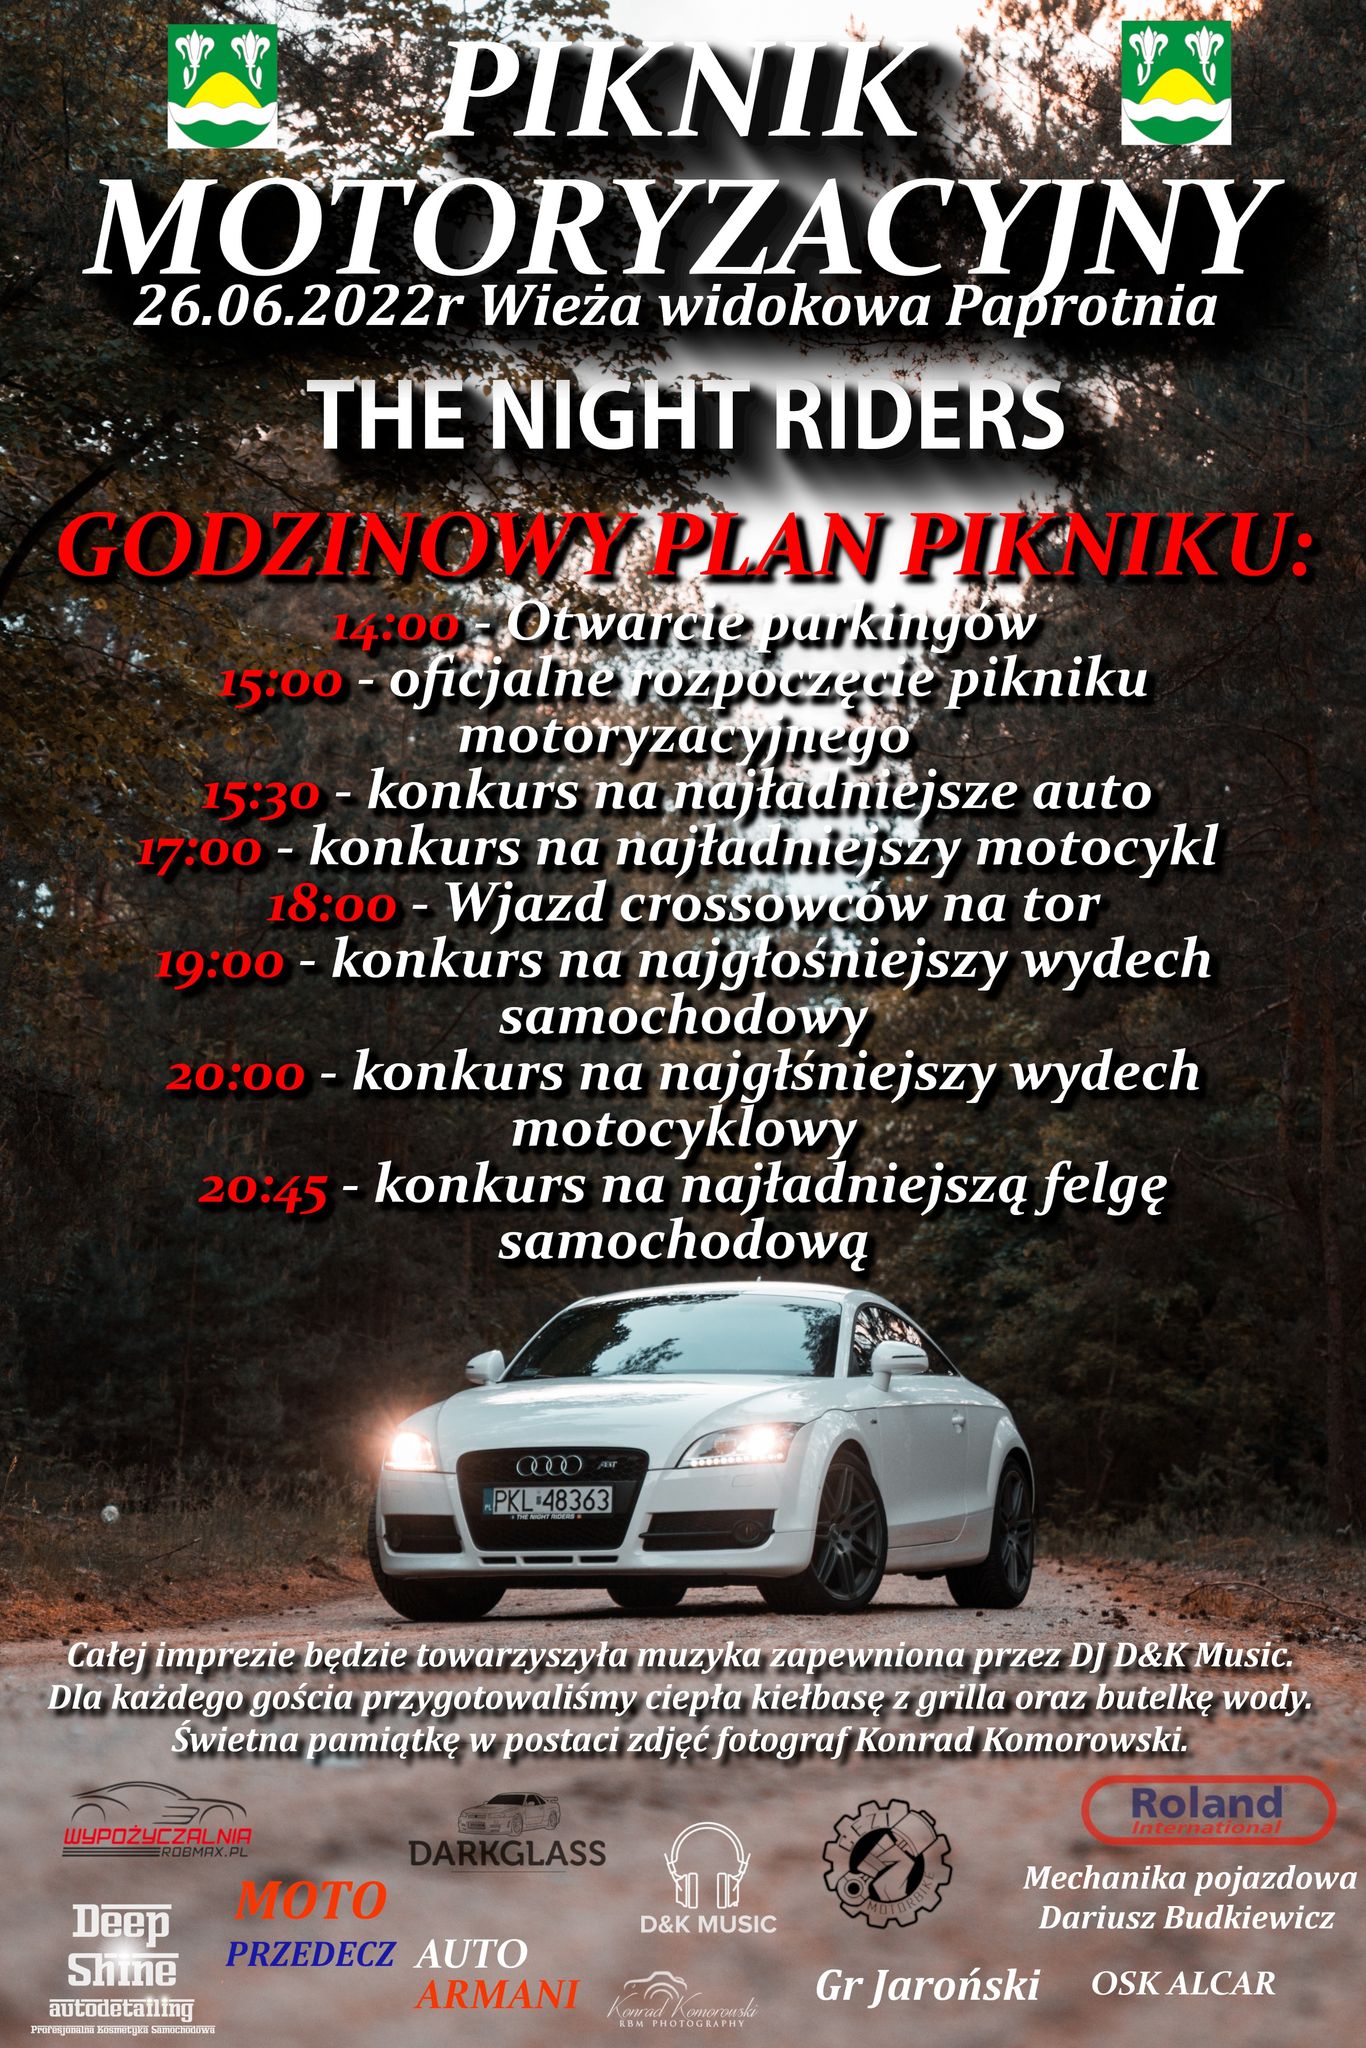 Plakat reklamujący Piknik Motoryzacyjny